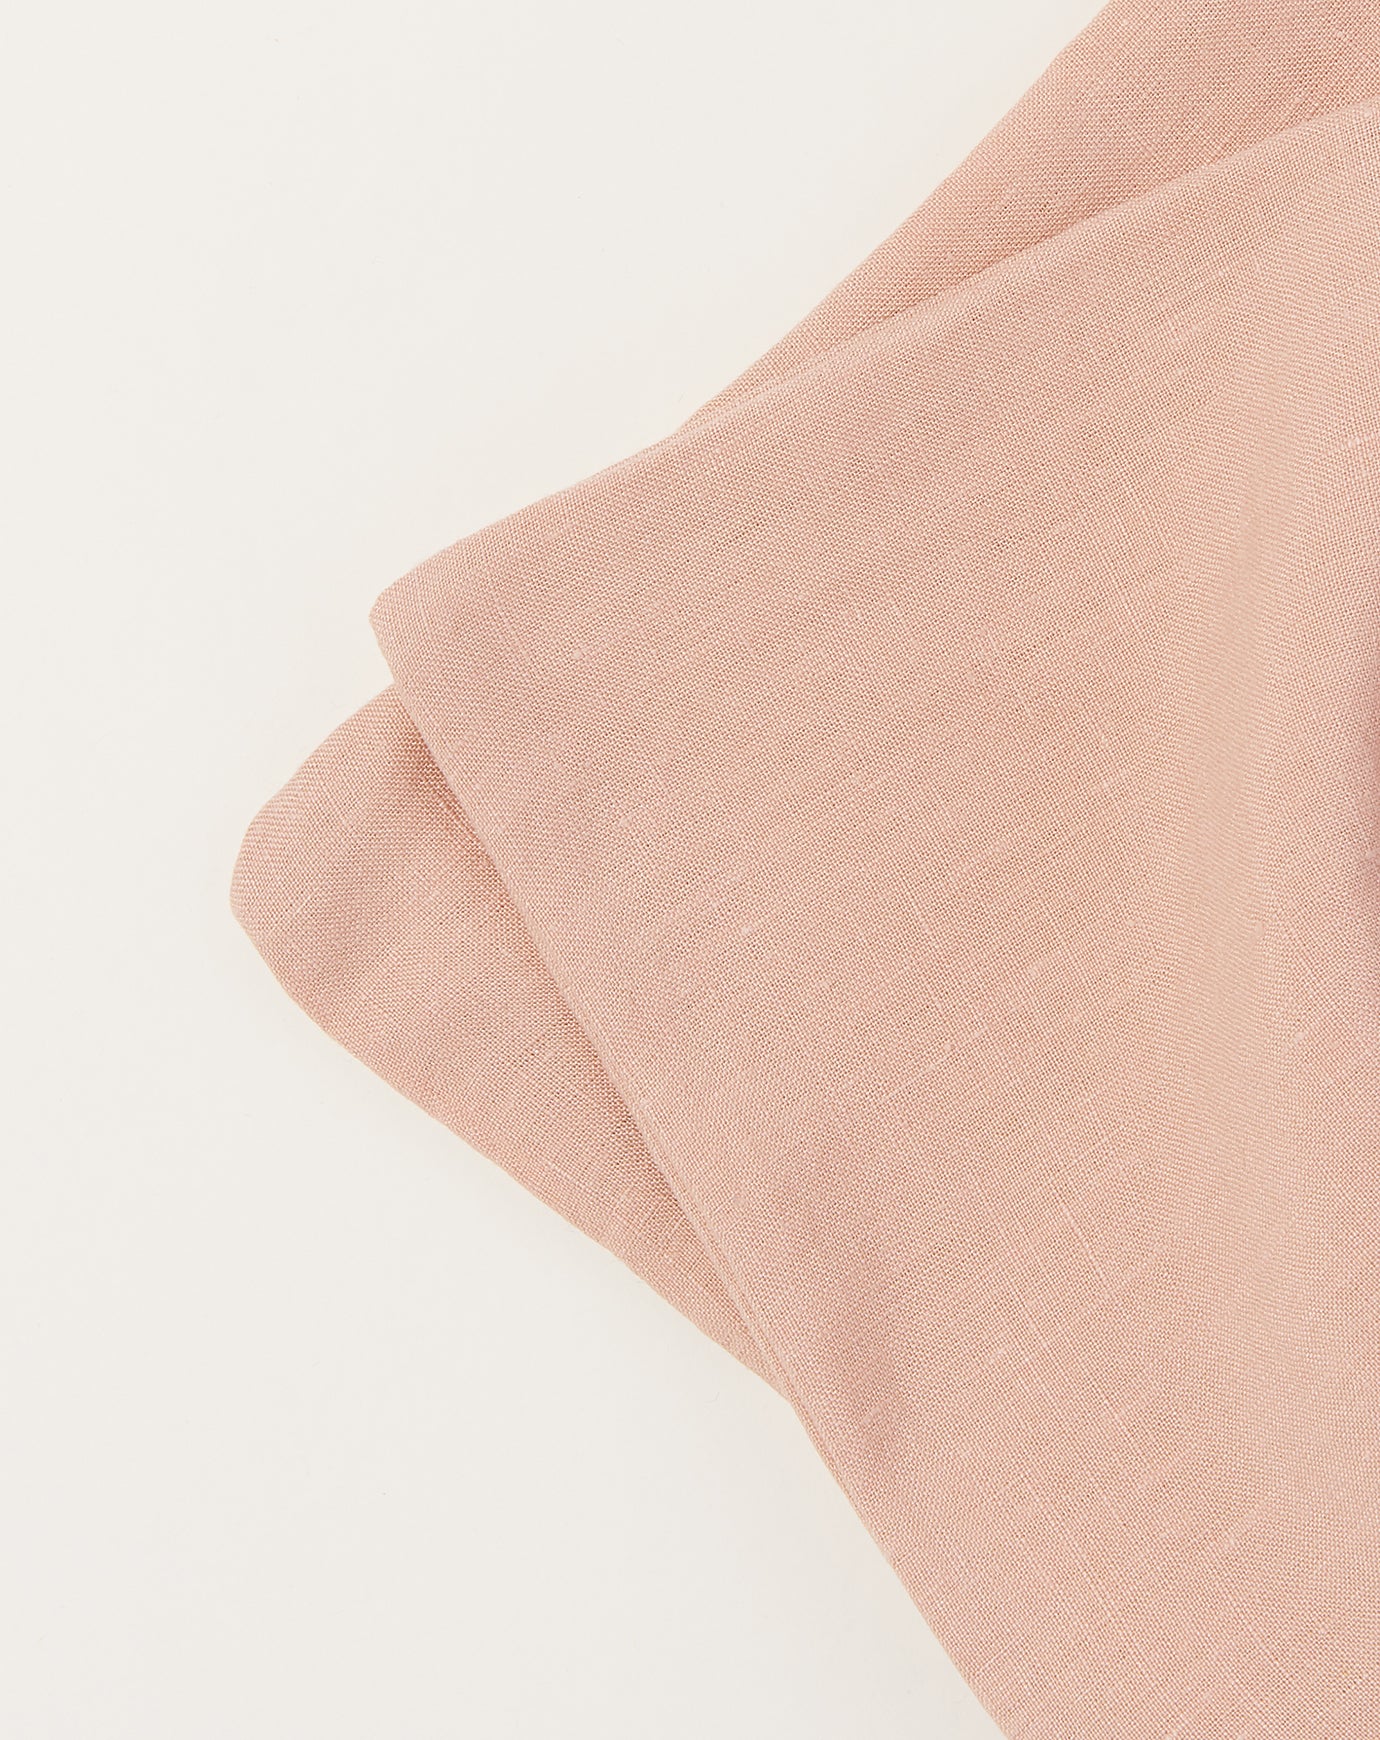 Deiji Studios Pillow Set in Clay Pink